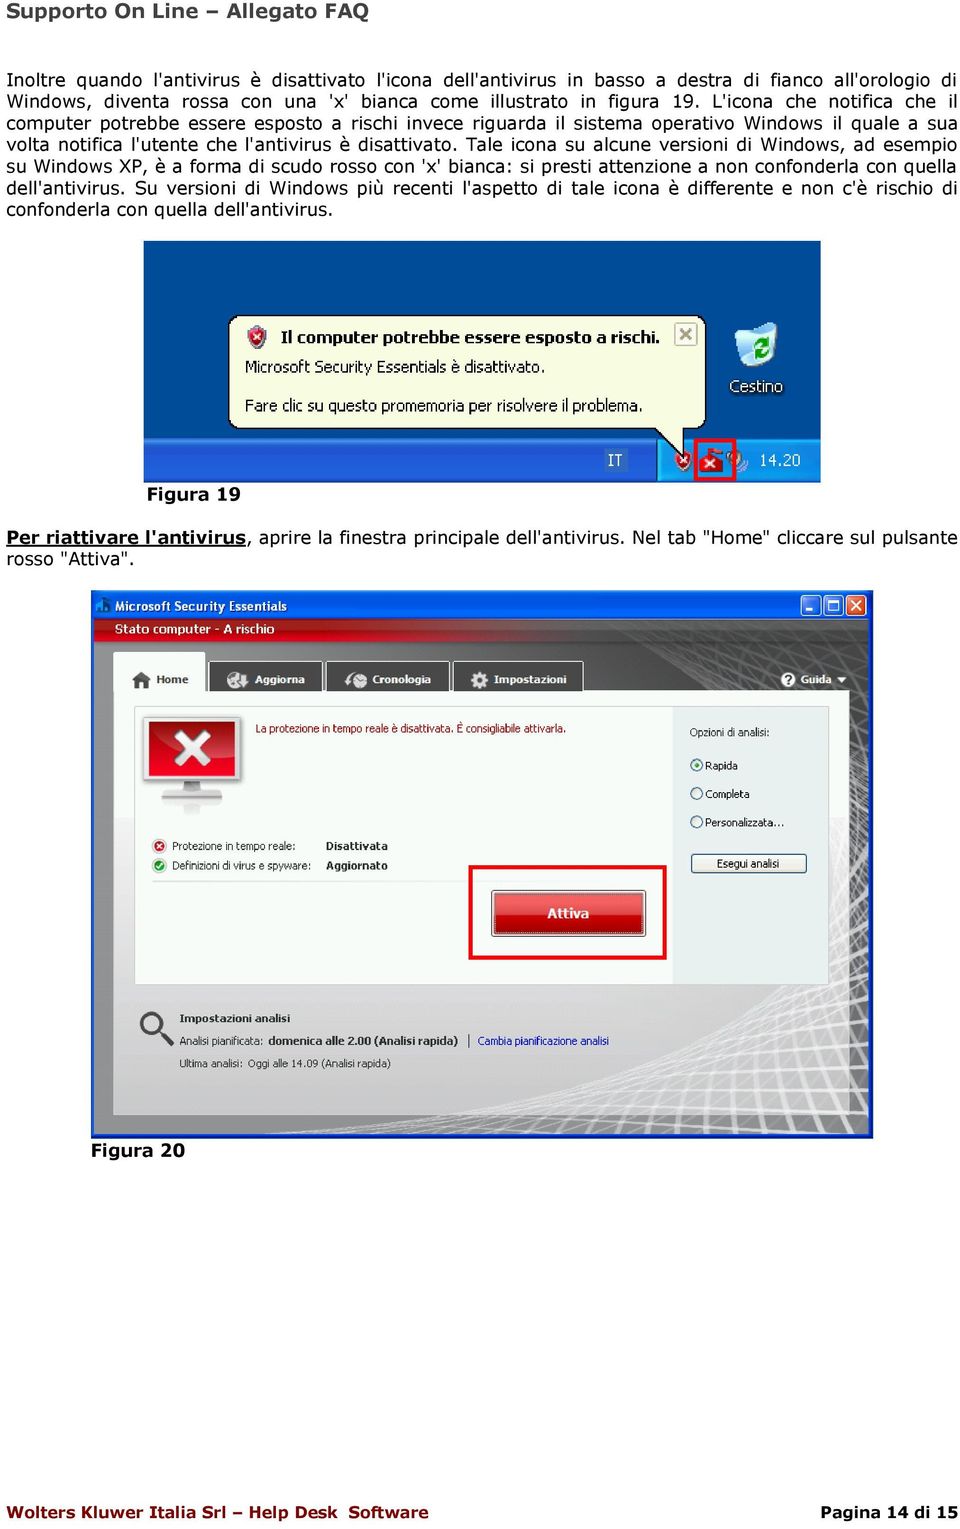 Tale icona su alcune versioni di Windows, ad esempio su Windows XP, è a forma di scudo rosso con 'x' bianca: si presti attenzione a non confonderla con quella dell'antivirus.